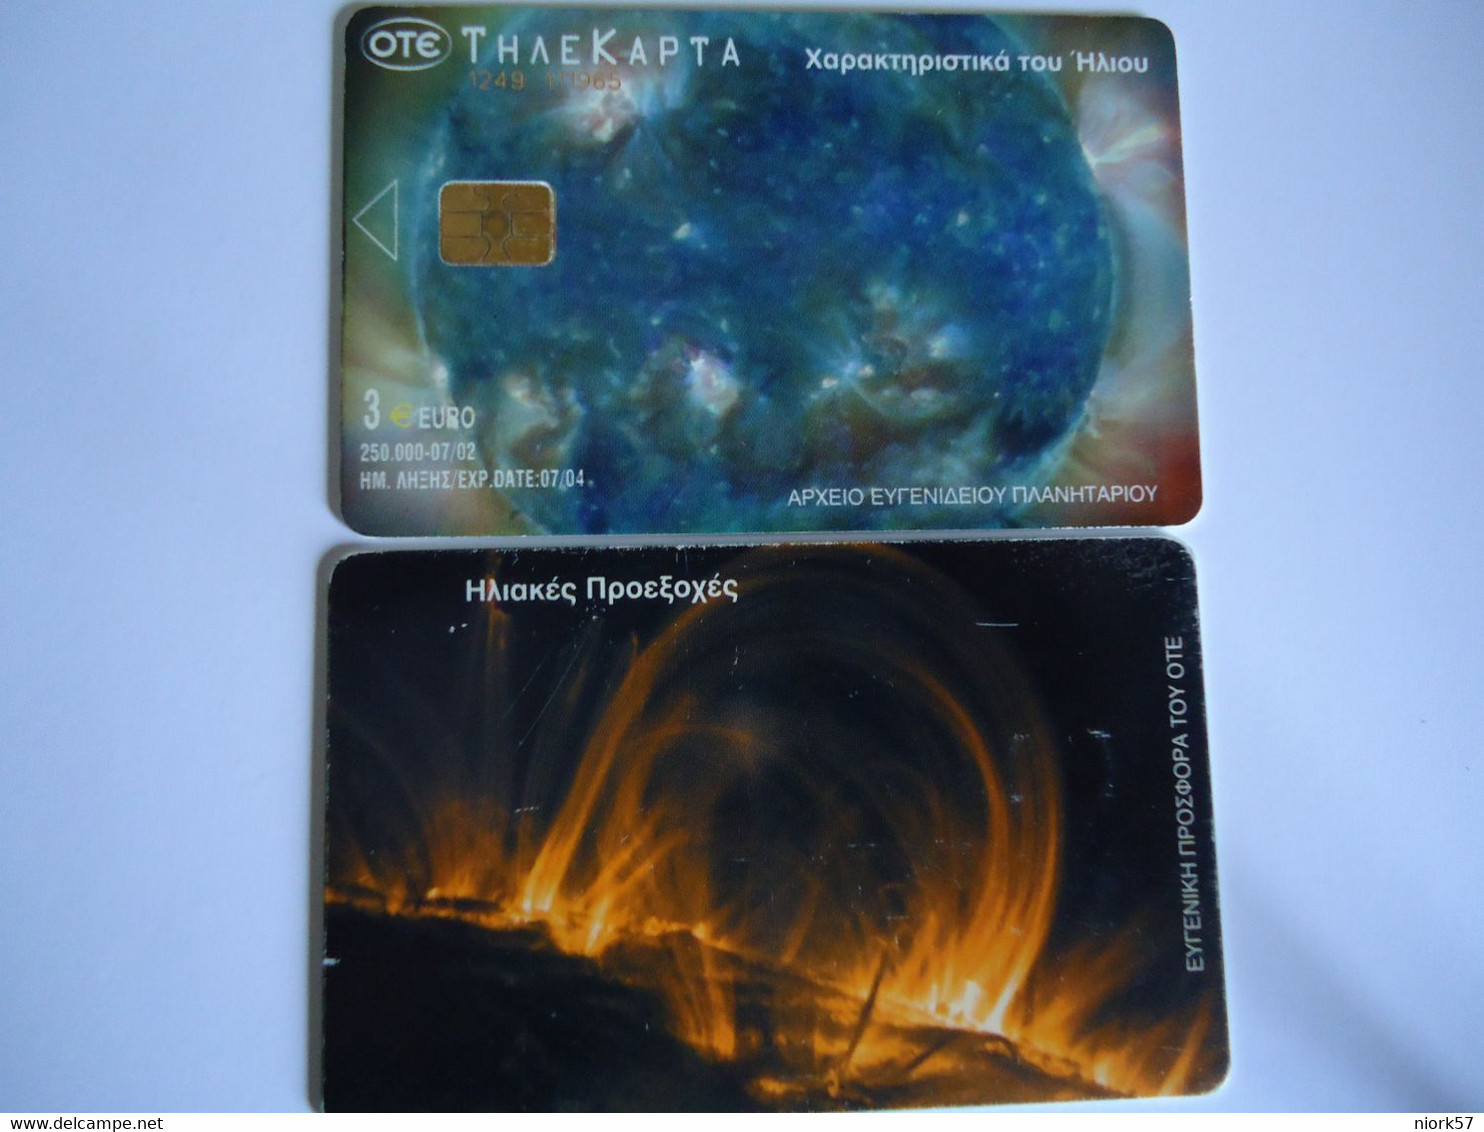 GREECE  USED  CARDS  PLANET  SPACE - Espacio